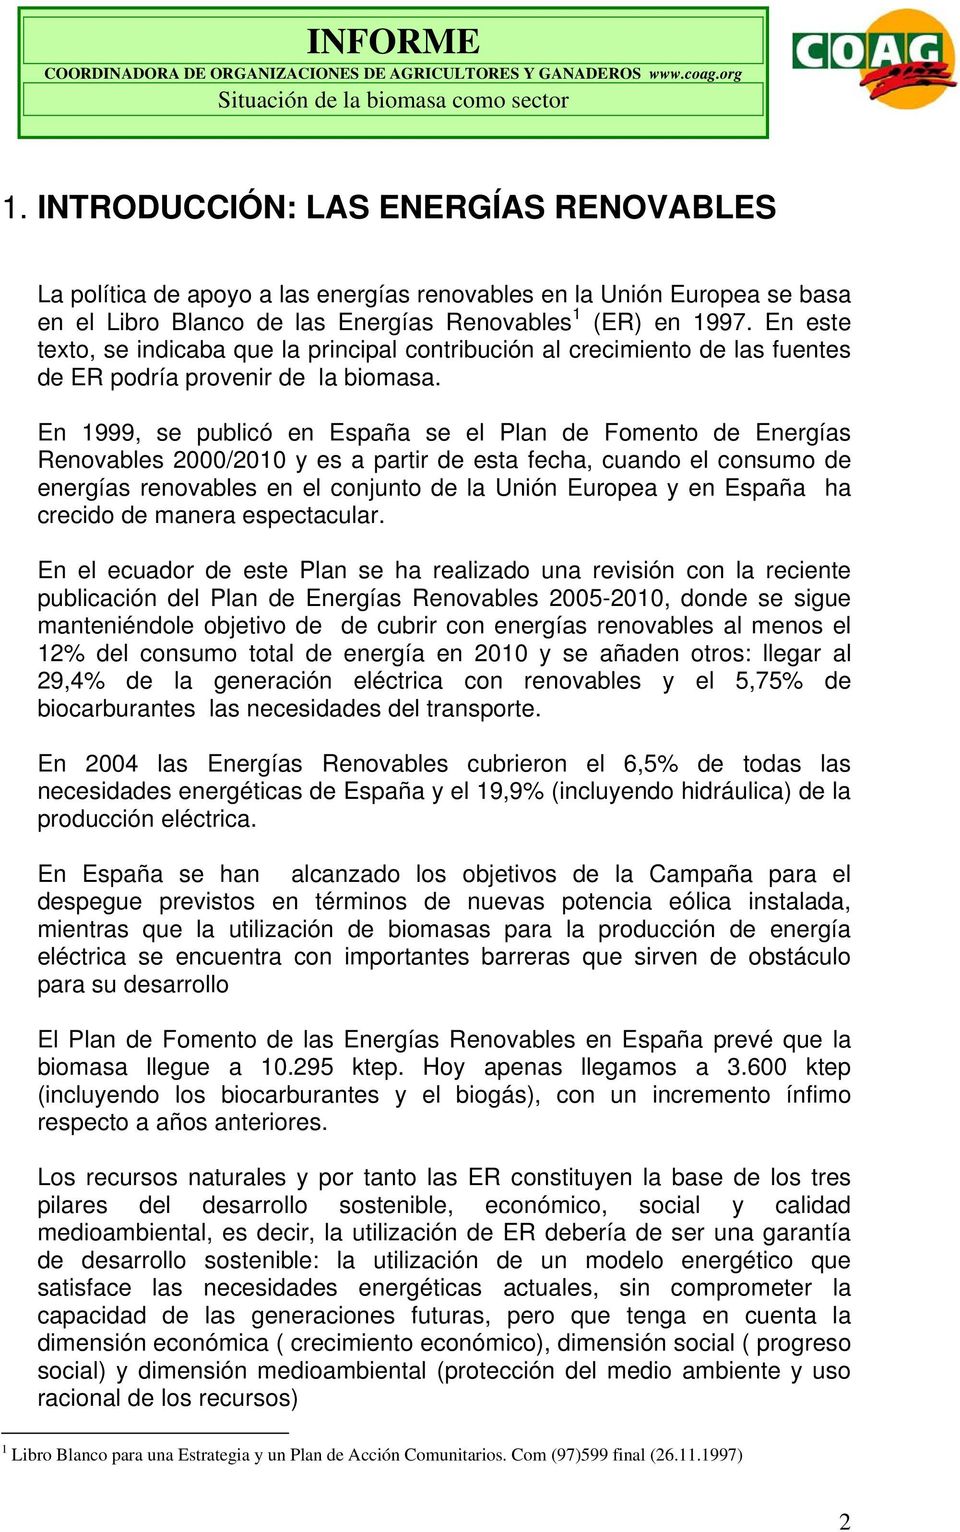 En 1999, se publicó en España se el Plan de Fomento de Energías Renovables 2000/2010 y es a partir de esta fecha, cuando el consumo de energías renovables en el conjunto de la Unión Europea y en